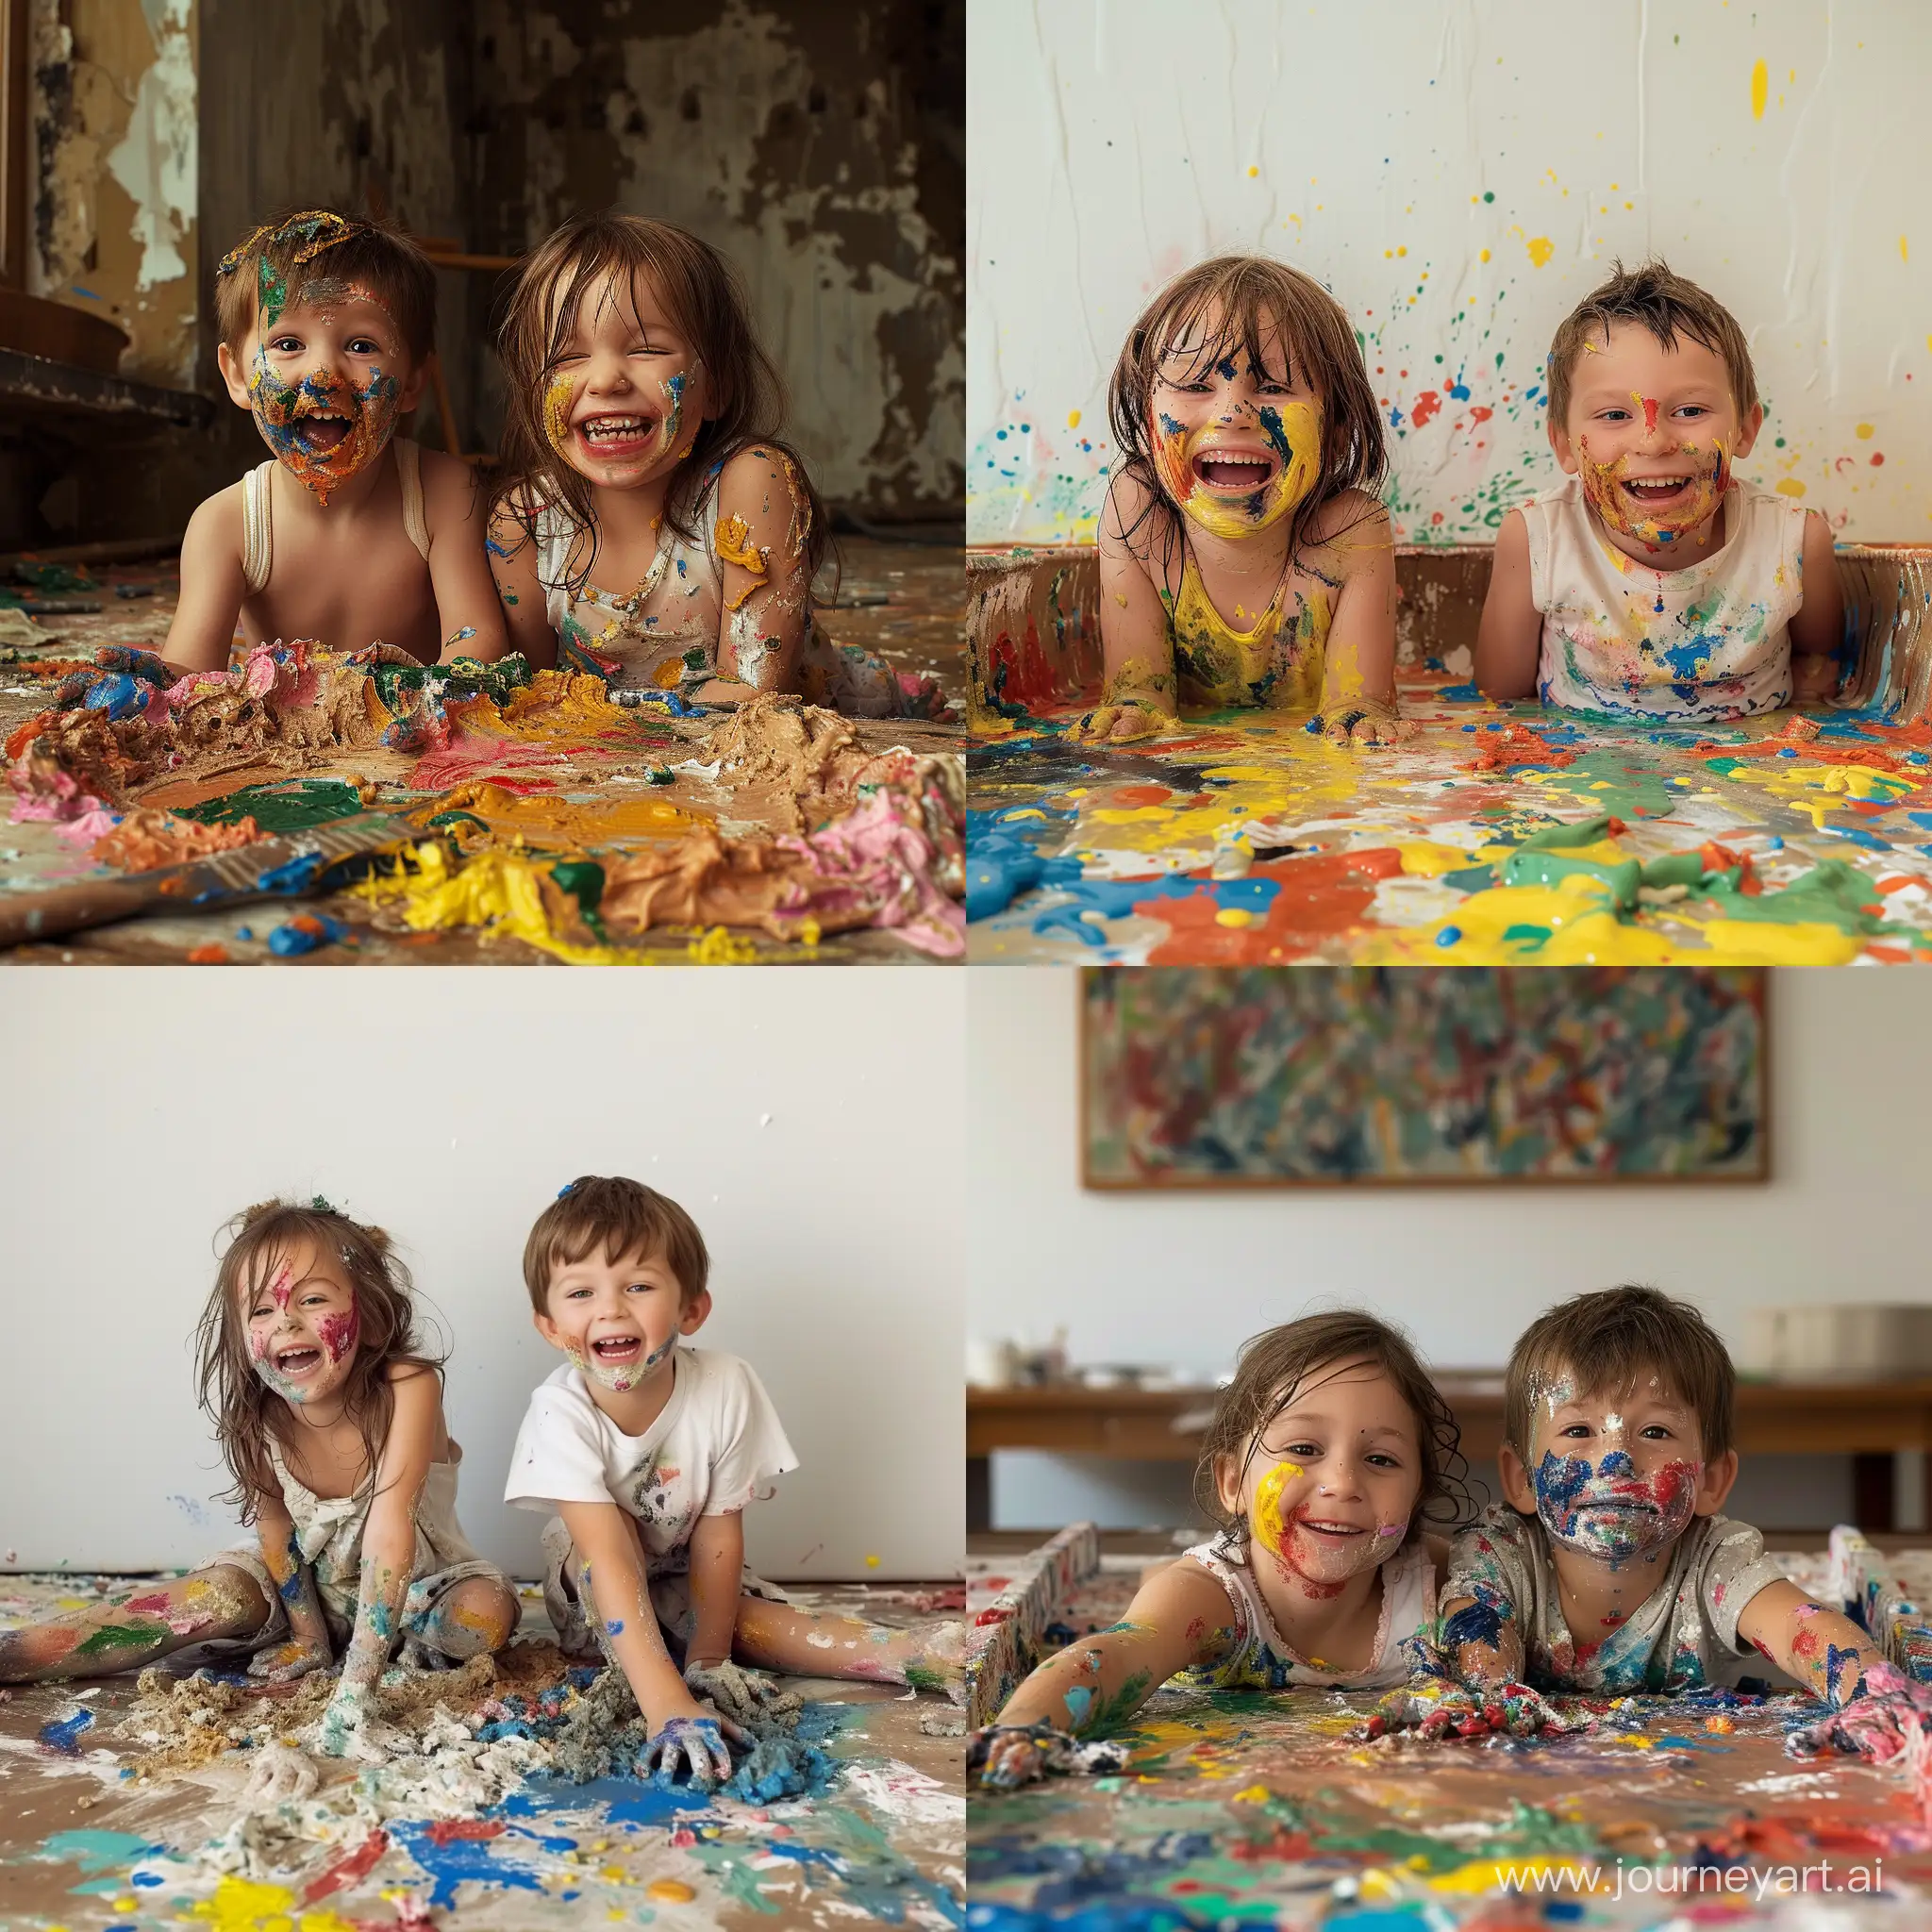 Мальчик и девочка веселятся, играют и перемазались в строительной краске всевозможных цветов, оставленной родителями для ремонта квартиры, фотография, гиперреализм, высокое разрешение